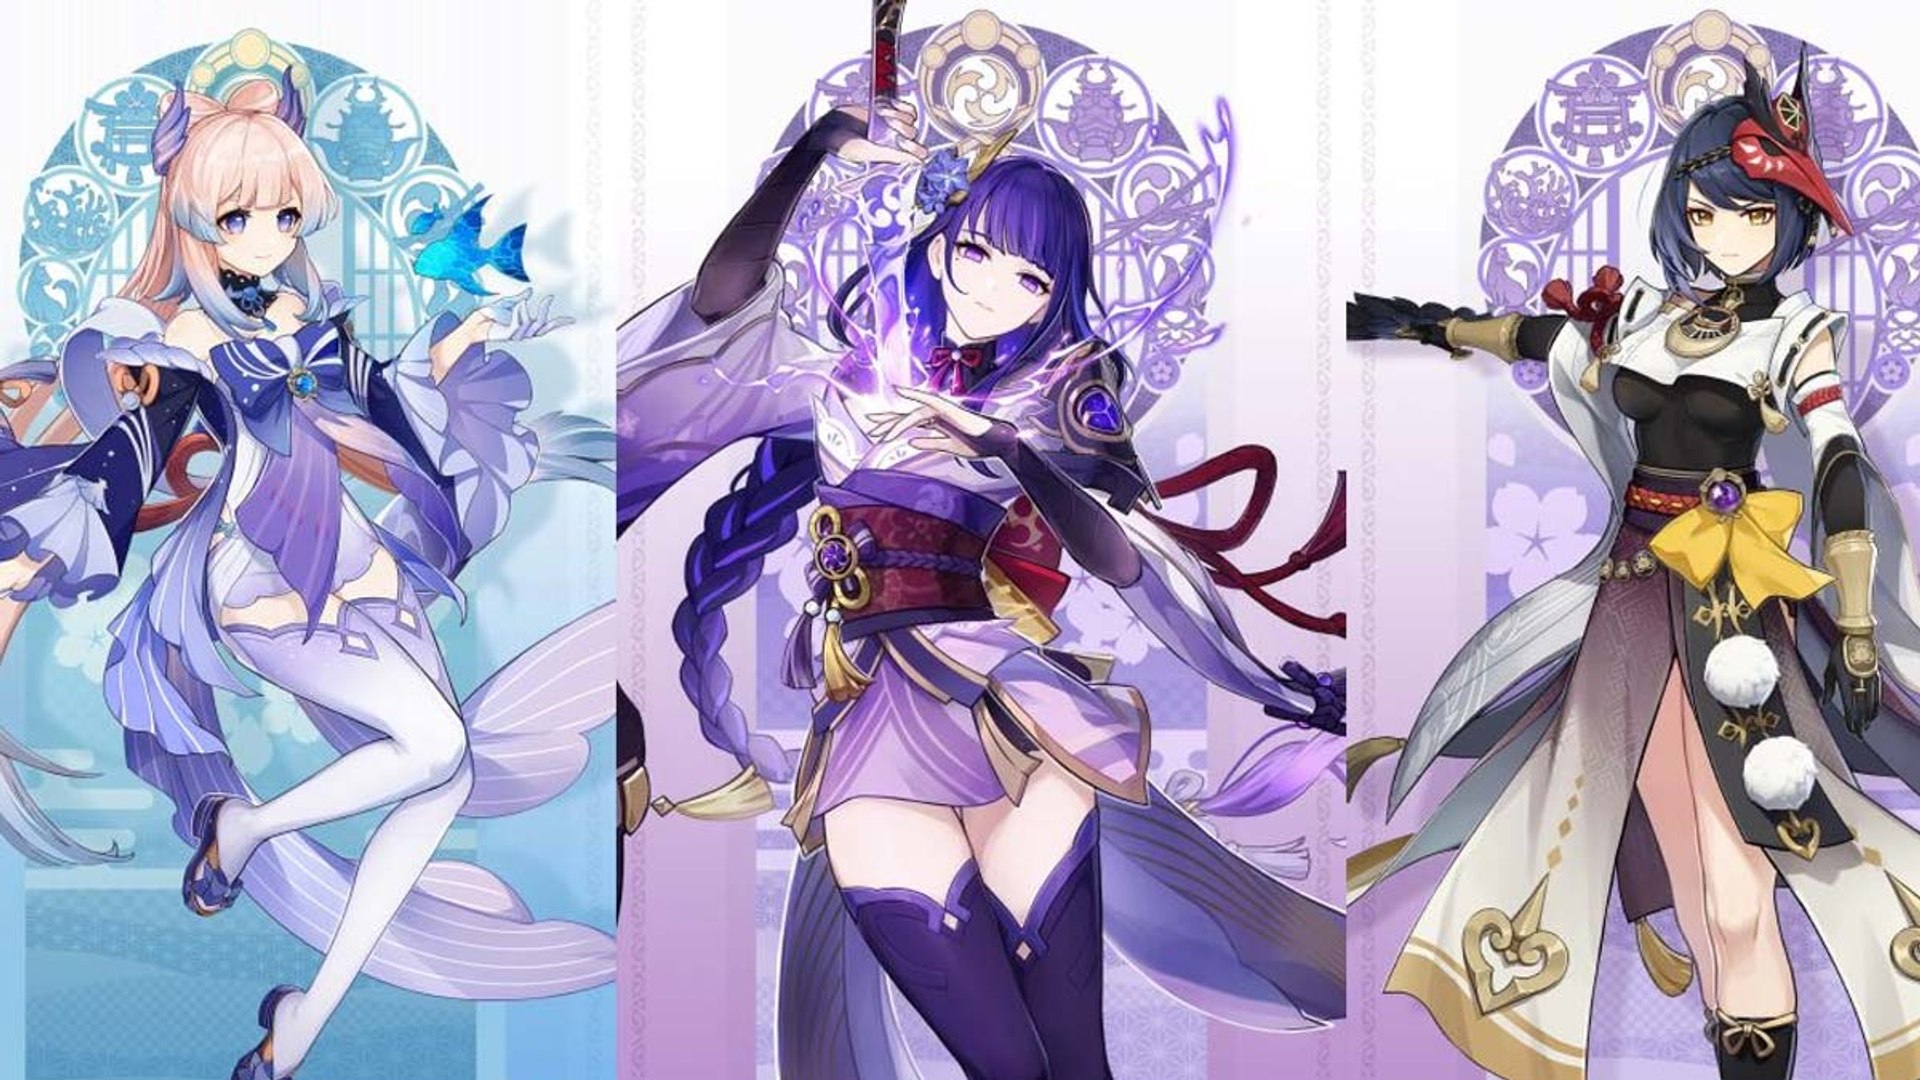 Genshin Impact: Inazuma, personagens e mais sobre versão 2.0